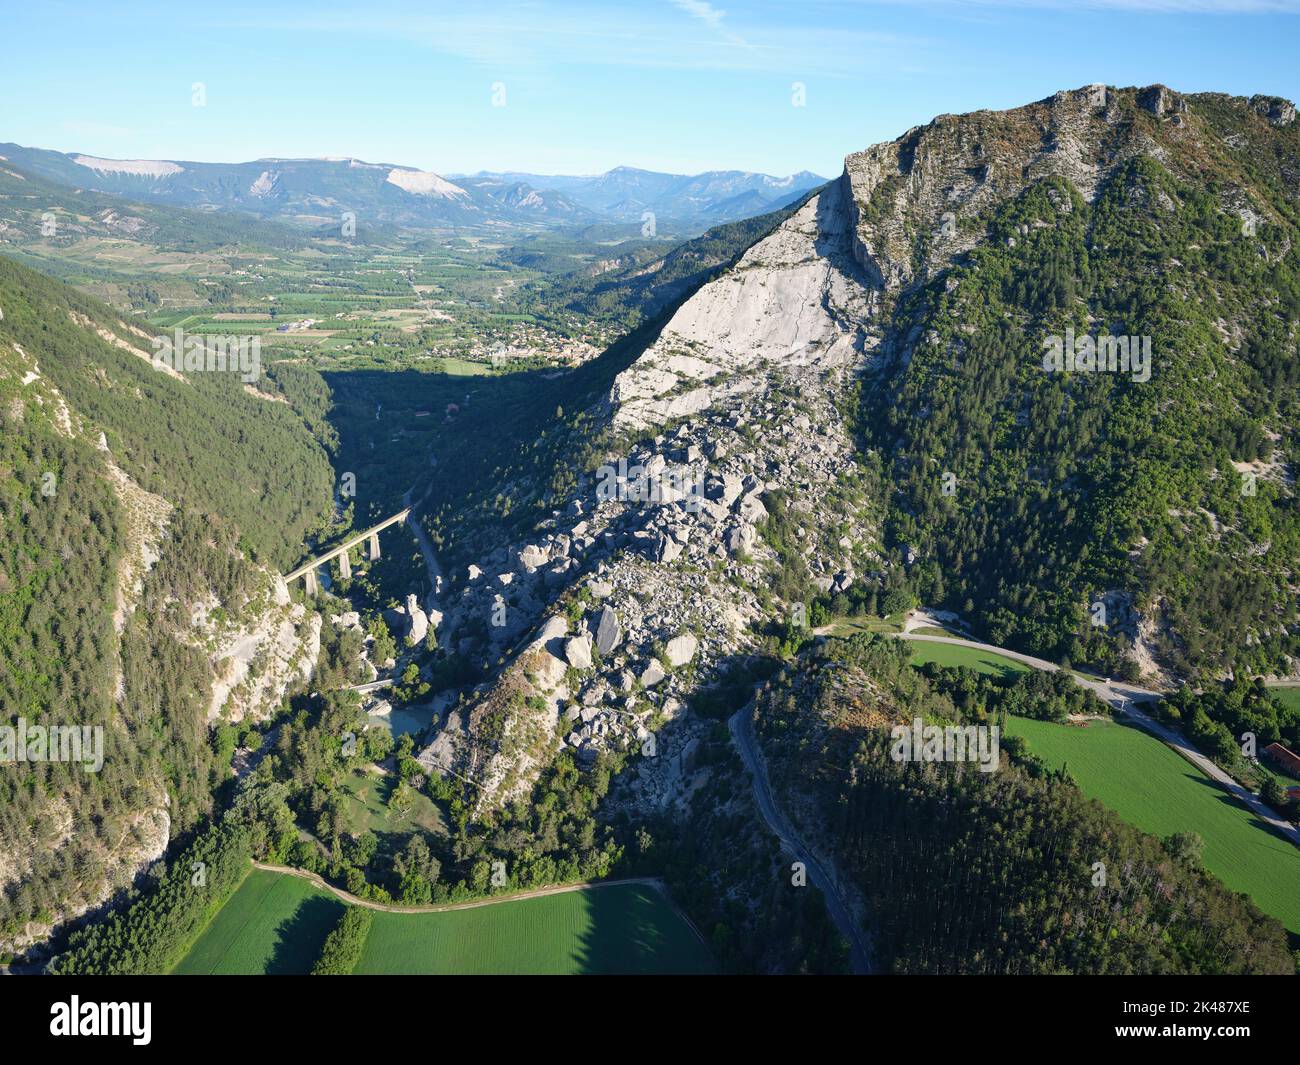 VISTA AEREA. Frana storica nell'alta Valle di Drôme. Si è verificato nel 1442, e ha creato due laghi, ora drenato. Le Claps, Luc-en-Diois, Francia. Foto Stock